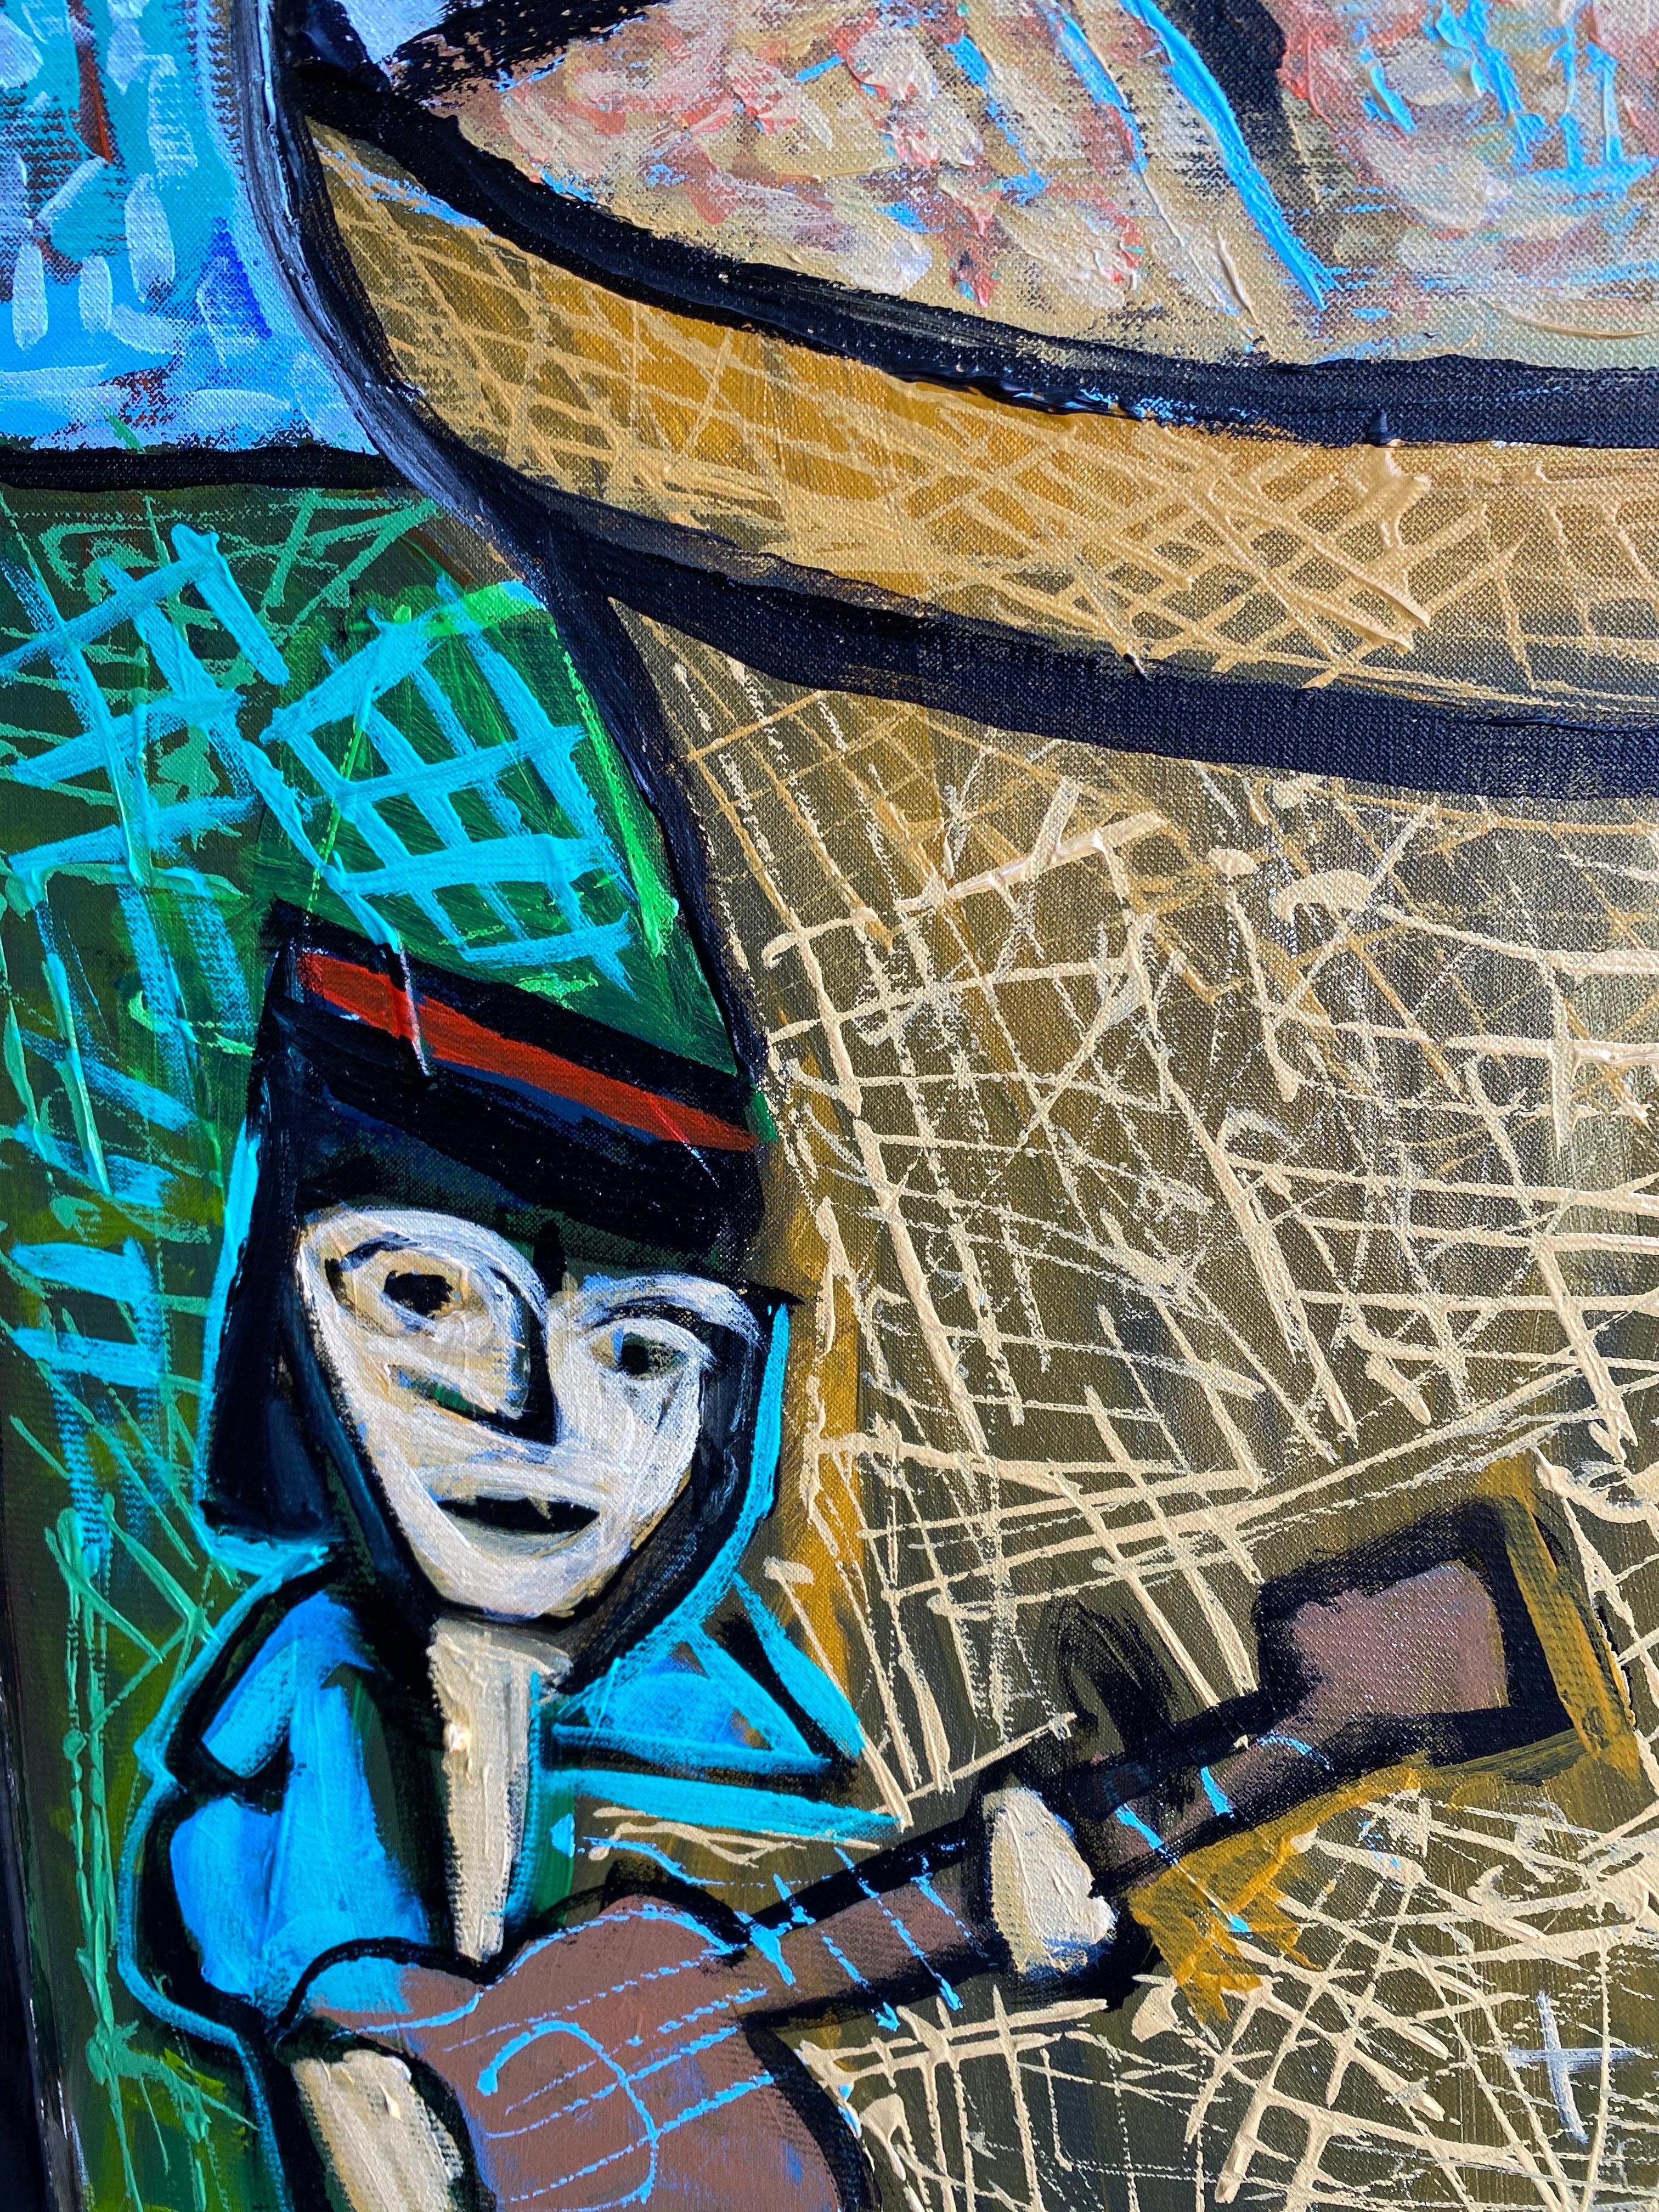 Großes Acryl auf Leinwand von Karl James Lubbering (geb. 1969). Karl stammt aus einer Familie prominenter texanischer Künstler, die sich über mehrere Jahrzehnte erstreckt und viele Stile, Genres und Themen abdeckt. Innerhalb seiner Familie hat Karl